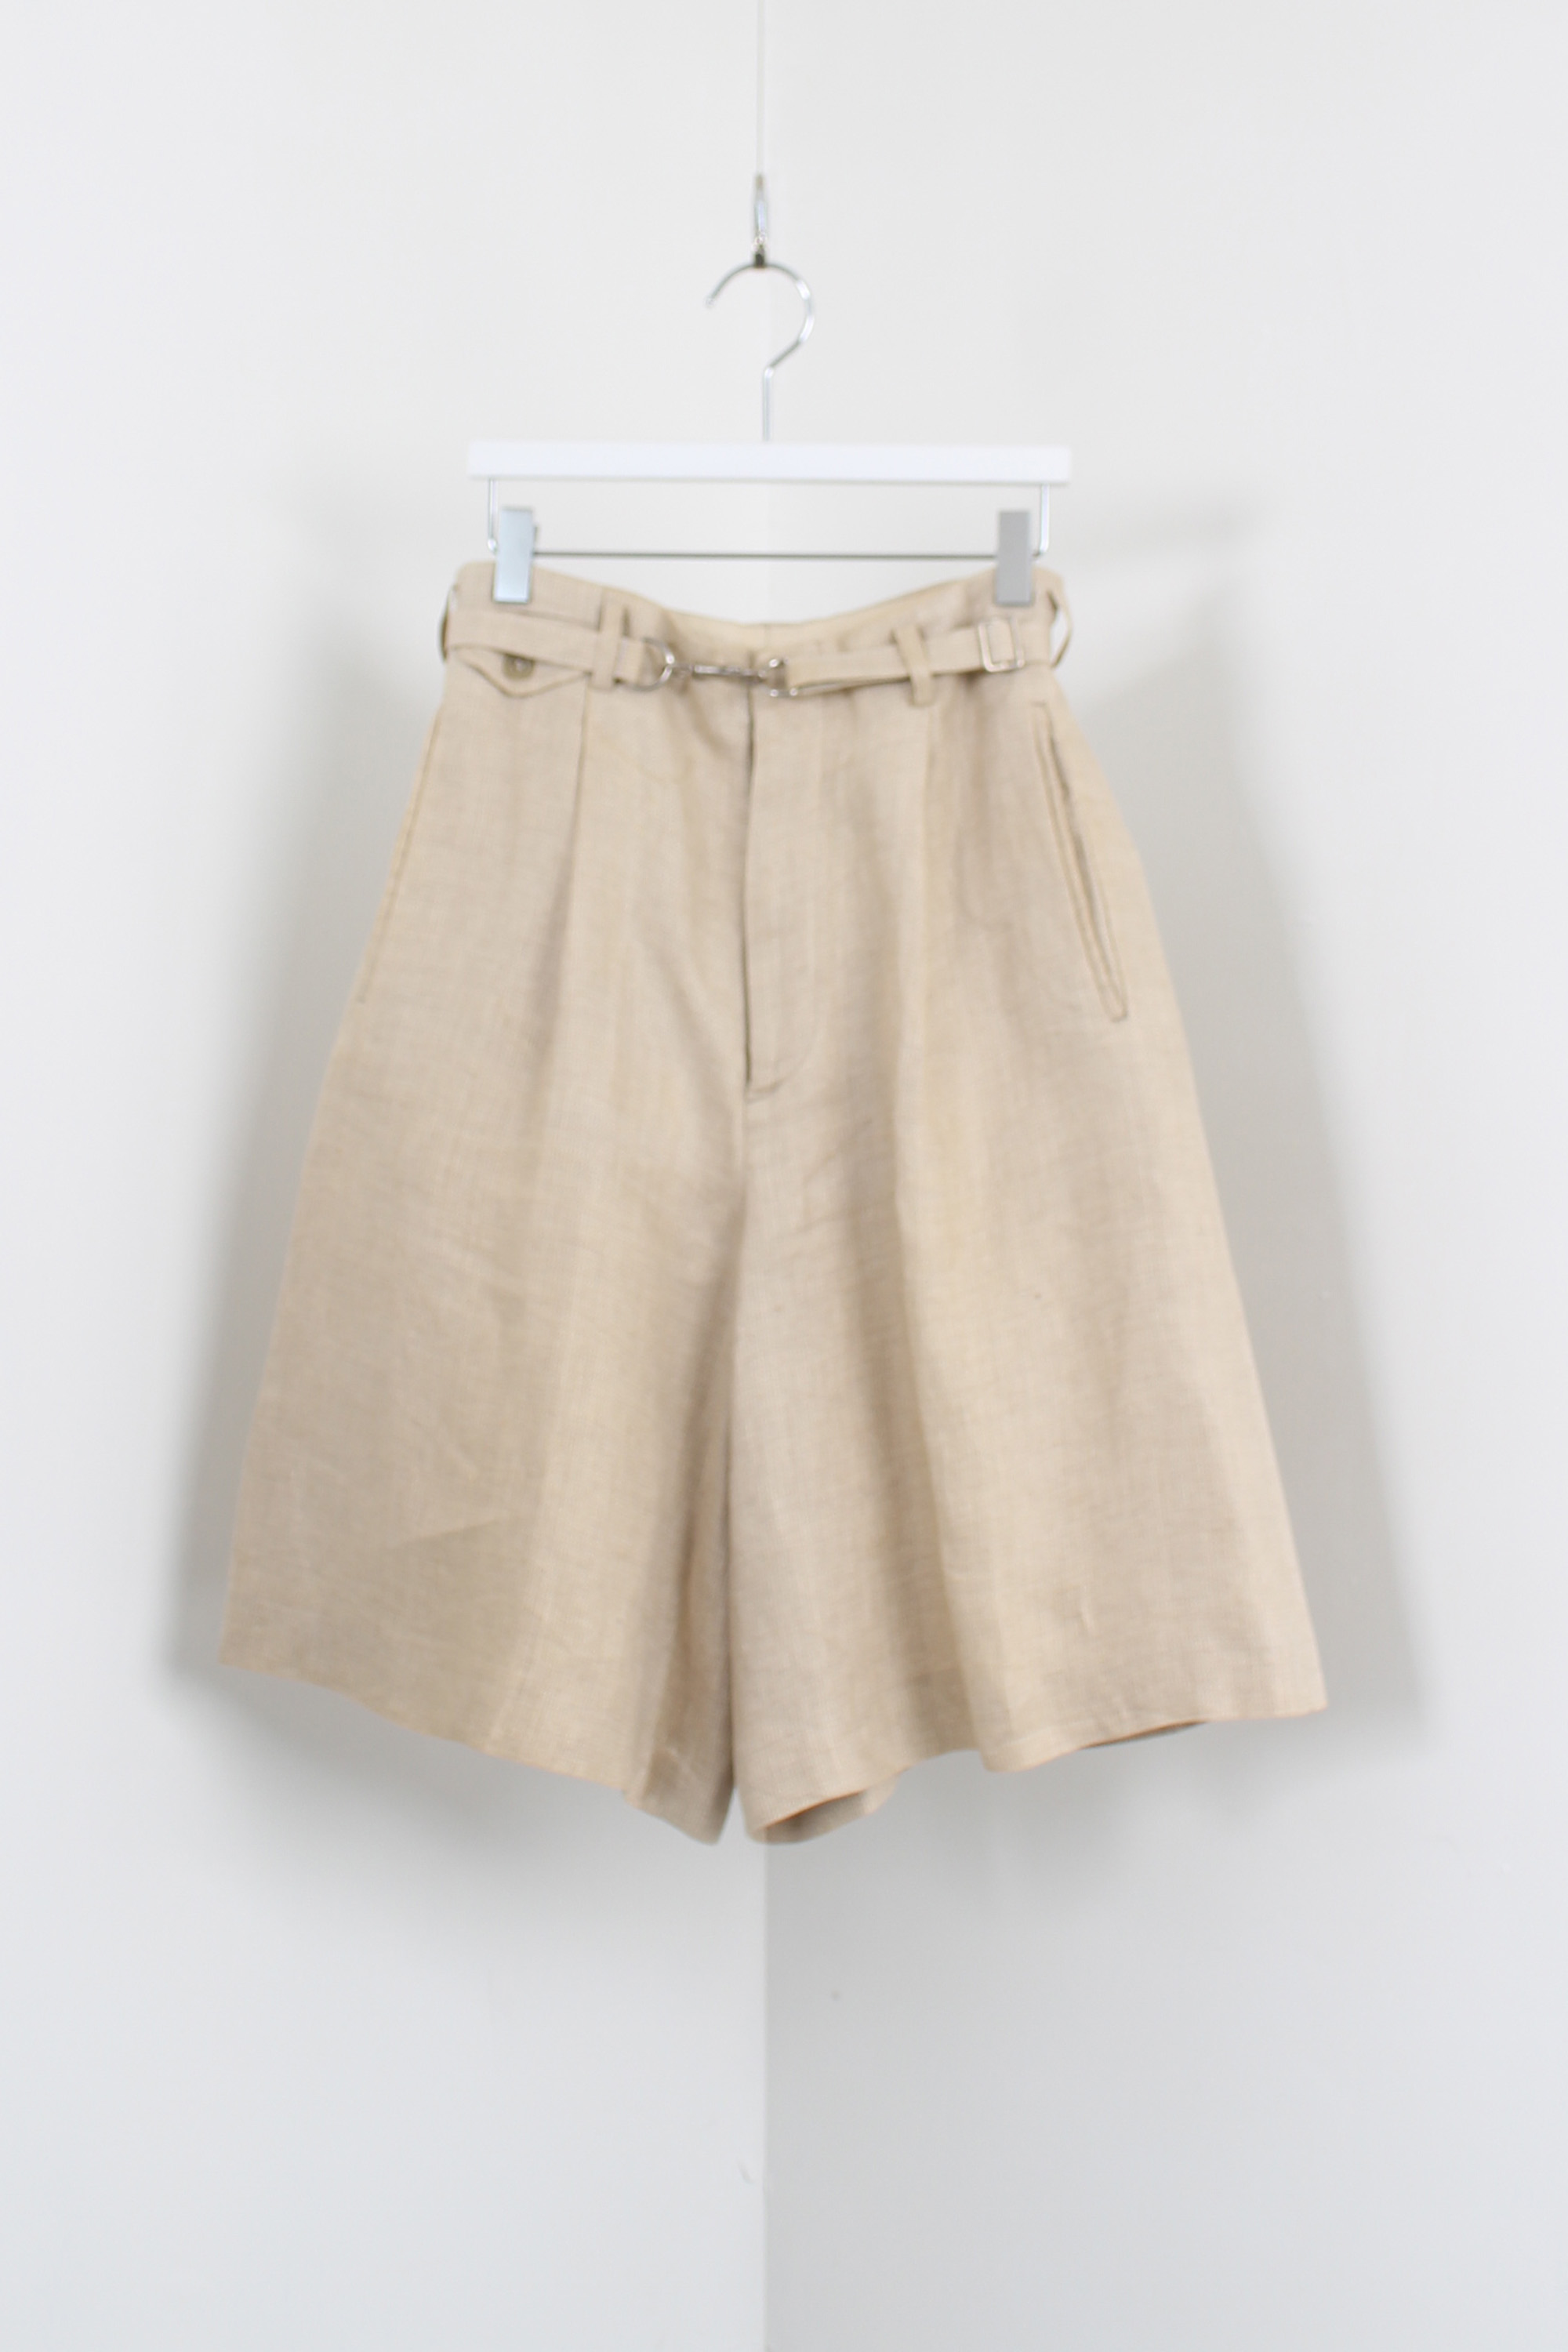 polo ralph lauren linen shorts